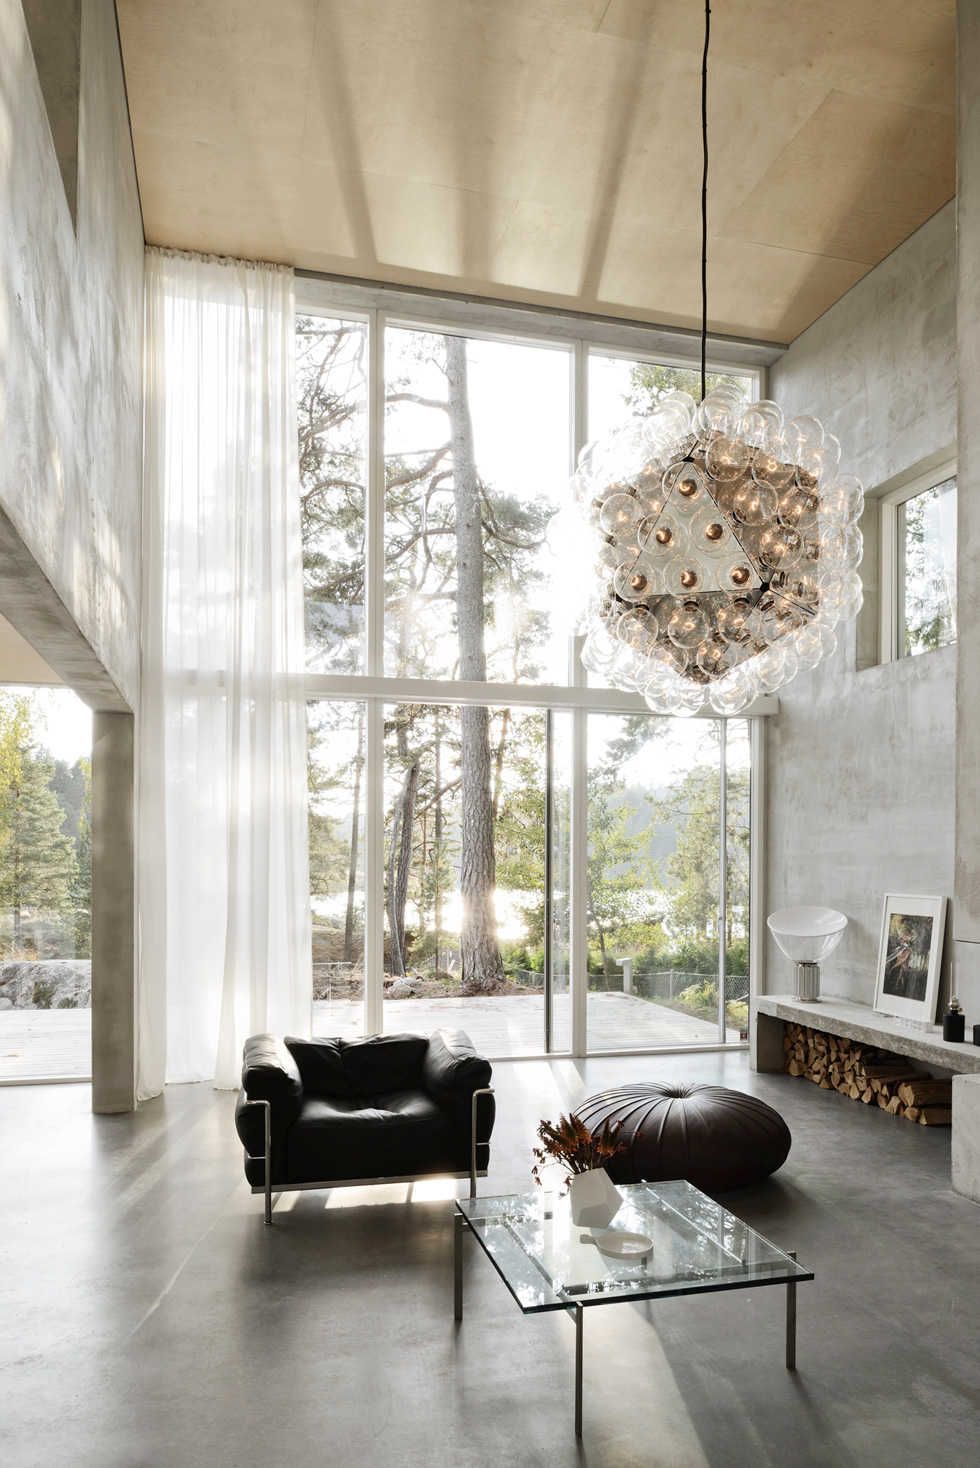 Buntglasfassade in einem Haus mit loftartigem Interieur